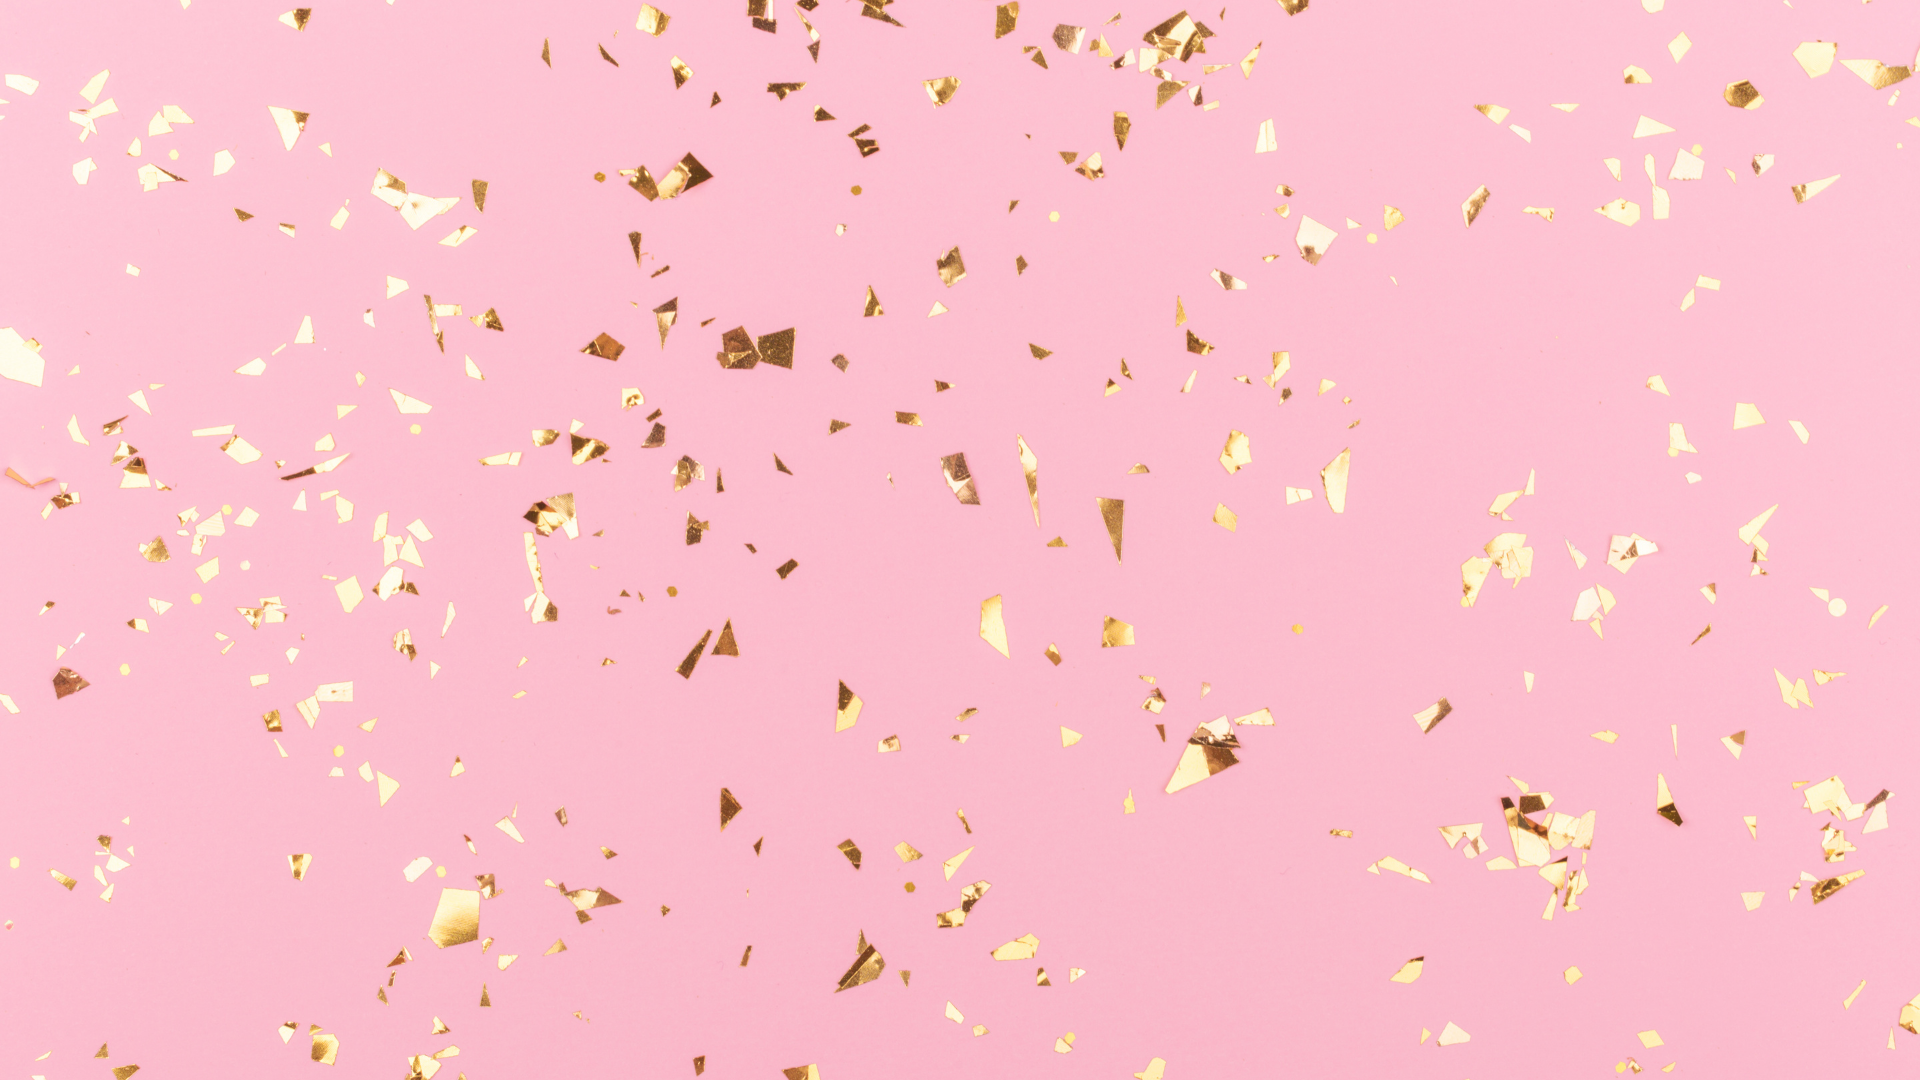 FREE Blush Pink Wallpaper for Desktop; blush pink background and wallpapers for desktop computers!